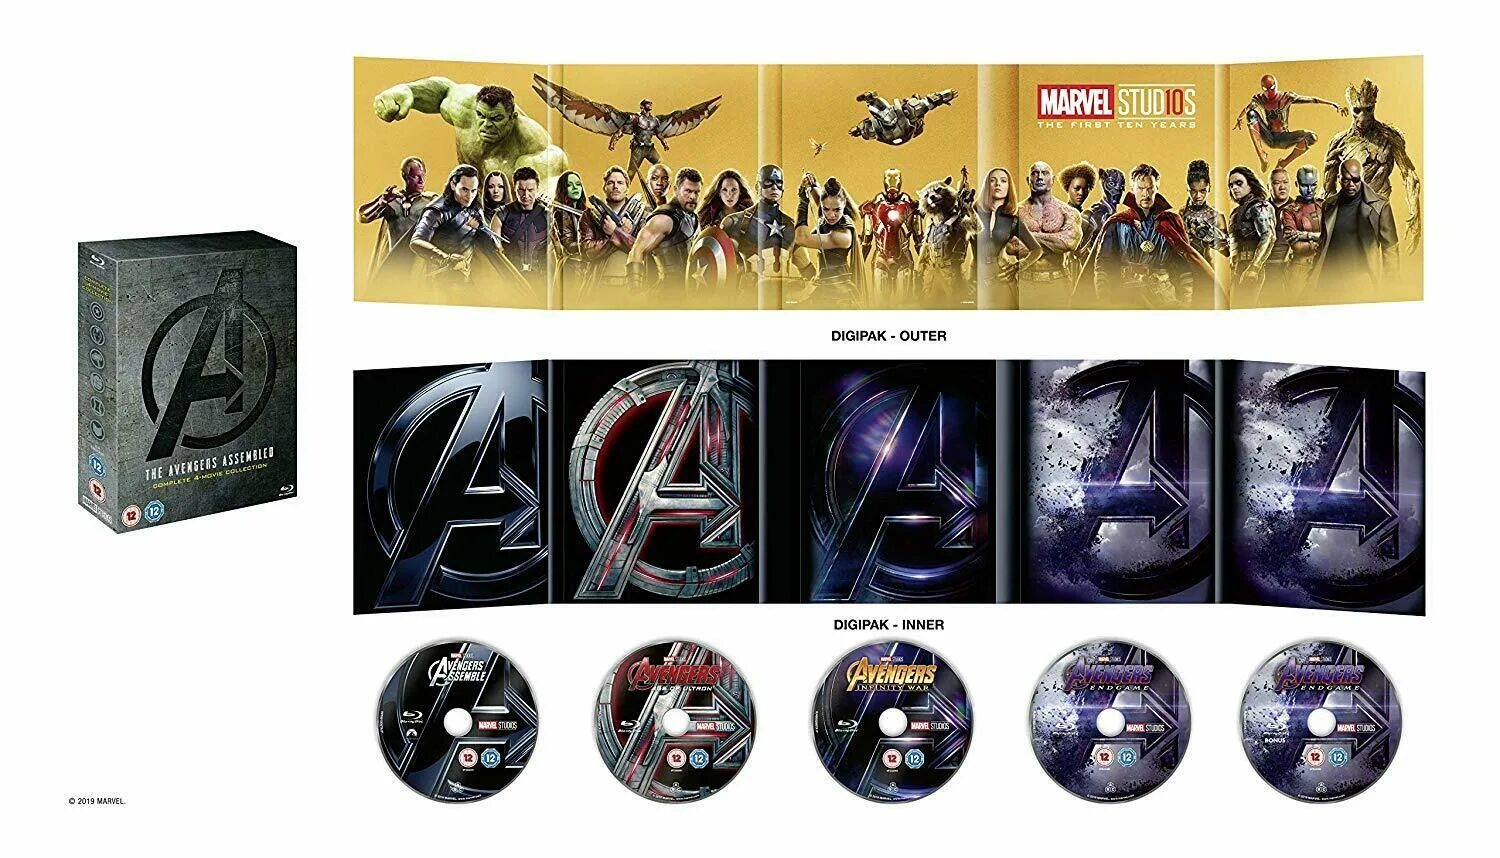 Диск марвел. Коллекция Blu ray дисков Marvel. Avengers 4 Endgame набор. Мстители финал Blu ray диск. Марвел диски с фильмами.